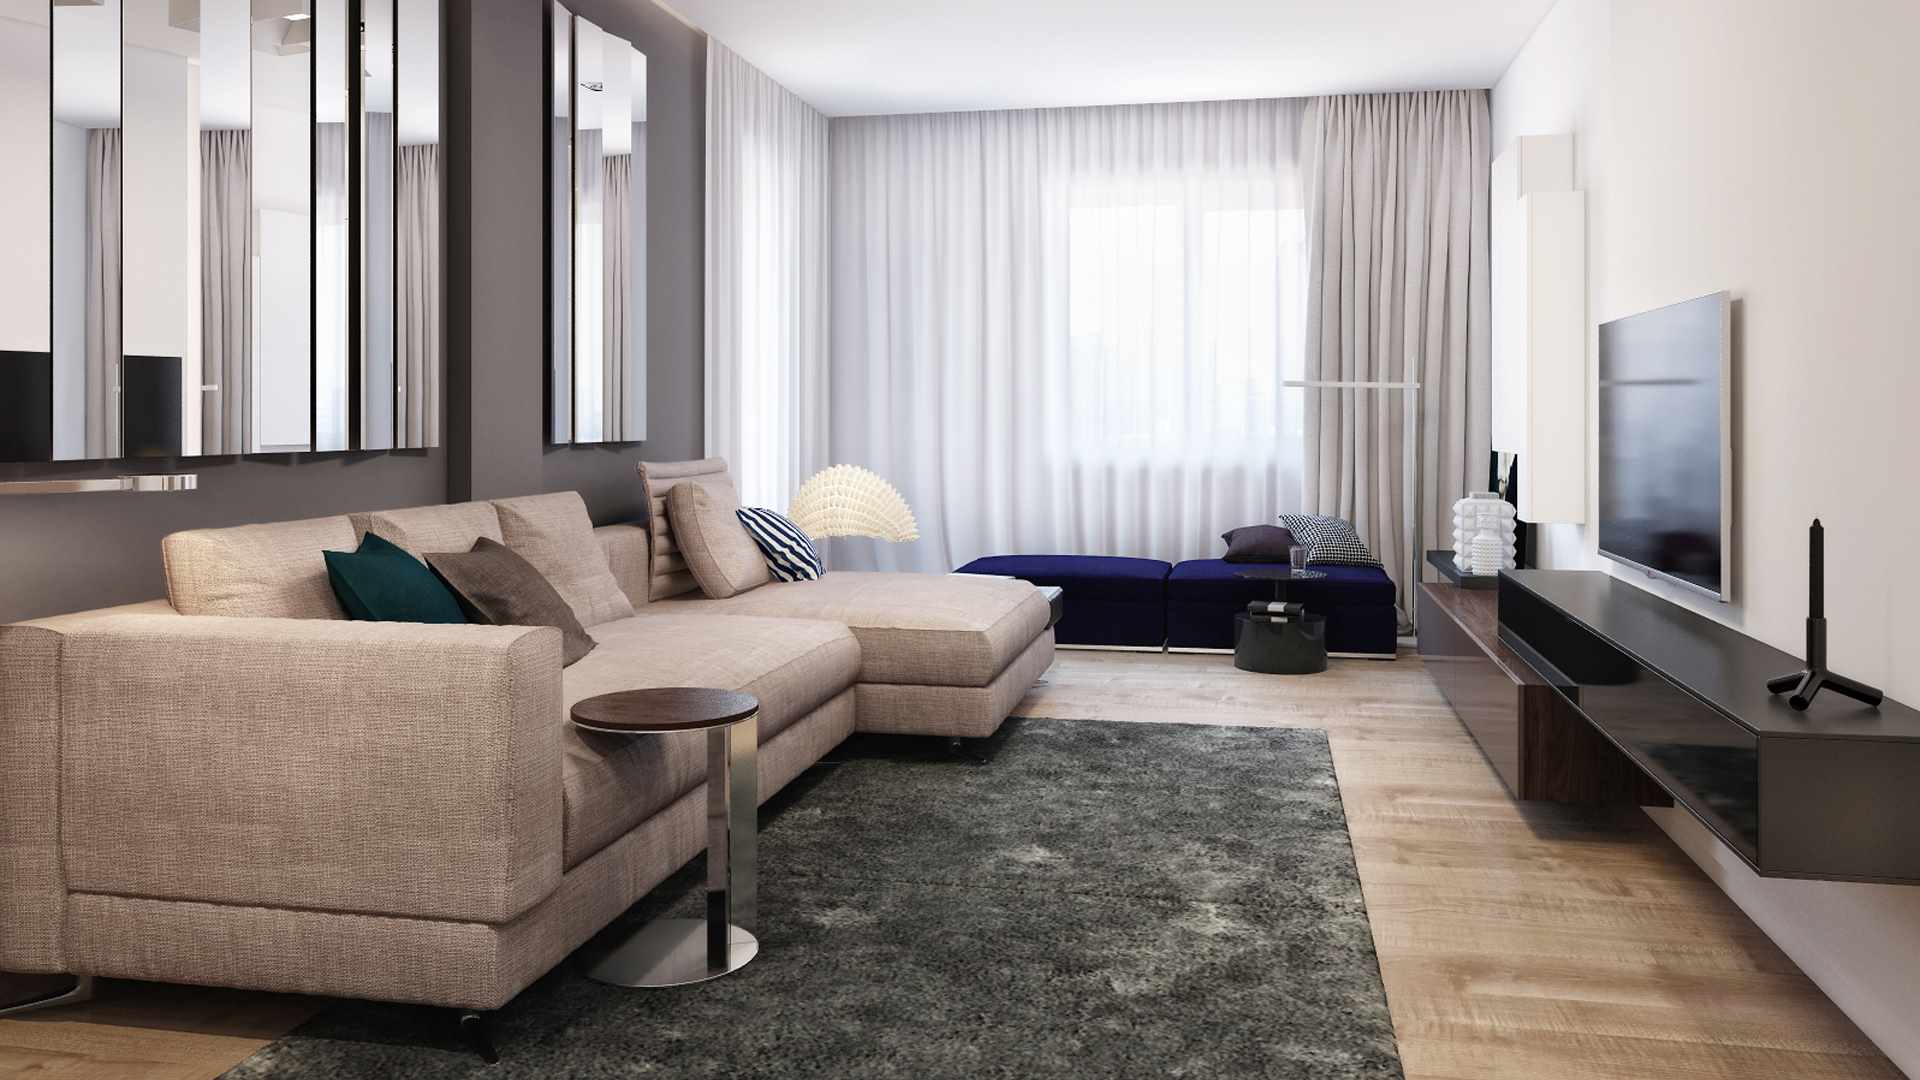 un exemple d’ús d’un interior lluminós d’una sala d’estil a l’estil del minimalisme